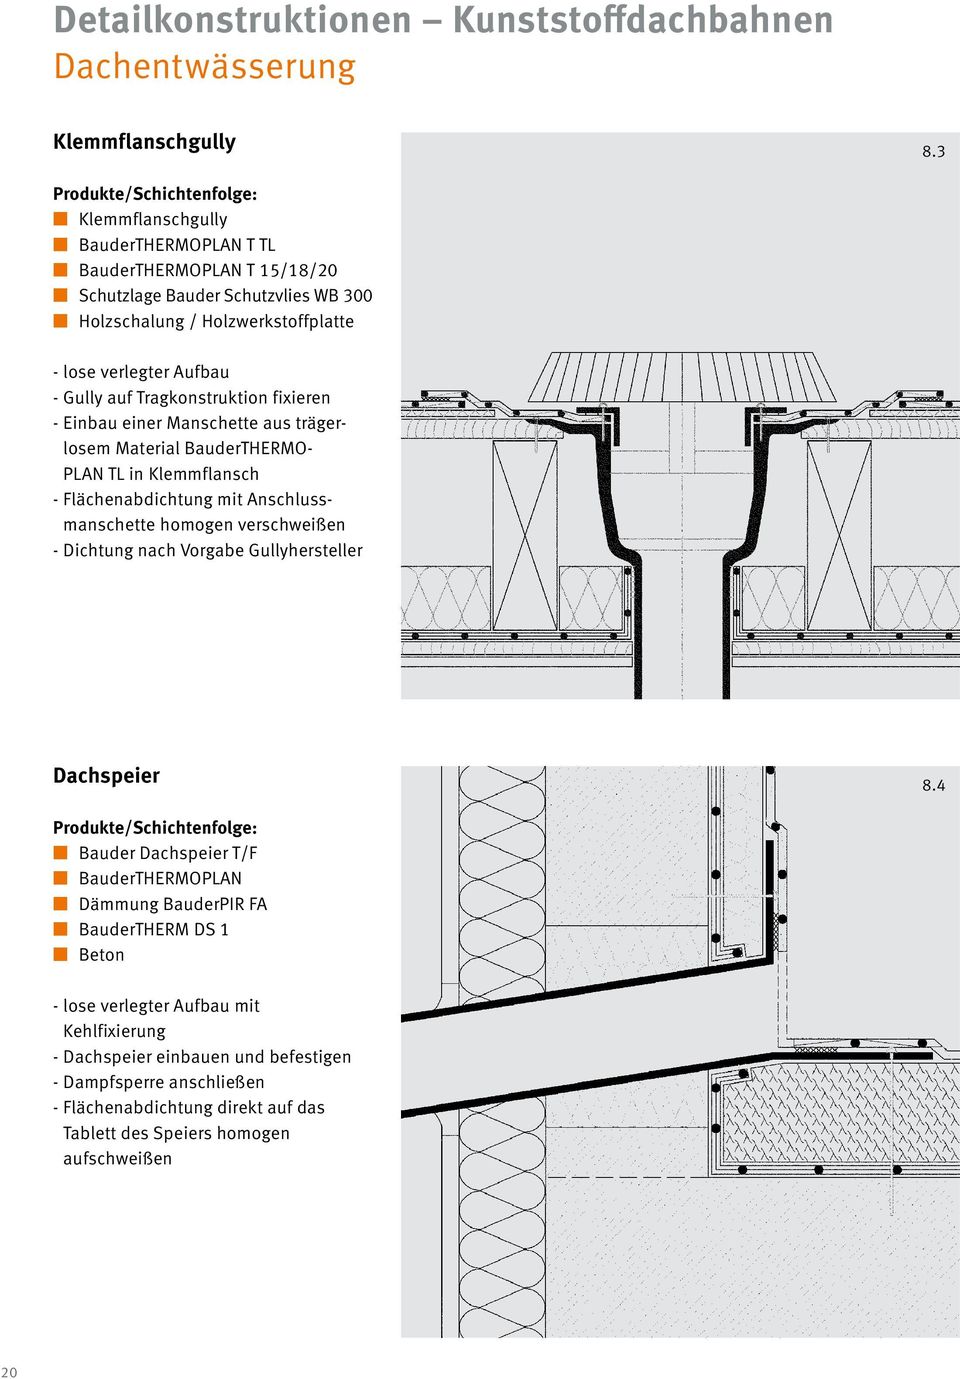 Tragkonstruktion fixieren - Einbau einer Manschette aus trägerlosem Material BauderTHERMO- PLAN TL in Klemmflansch - Flächenabdichtung mit Anschlussmanschette